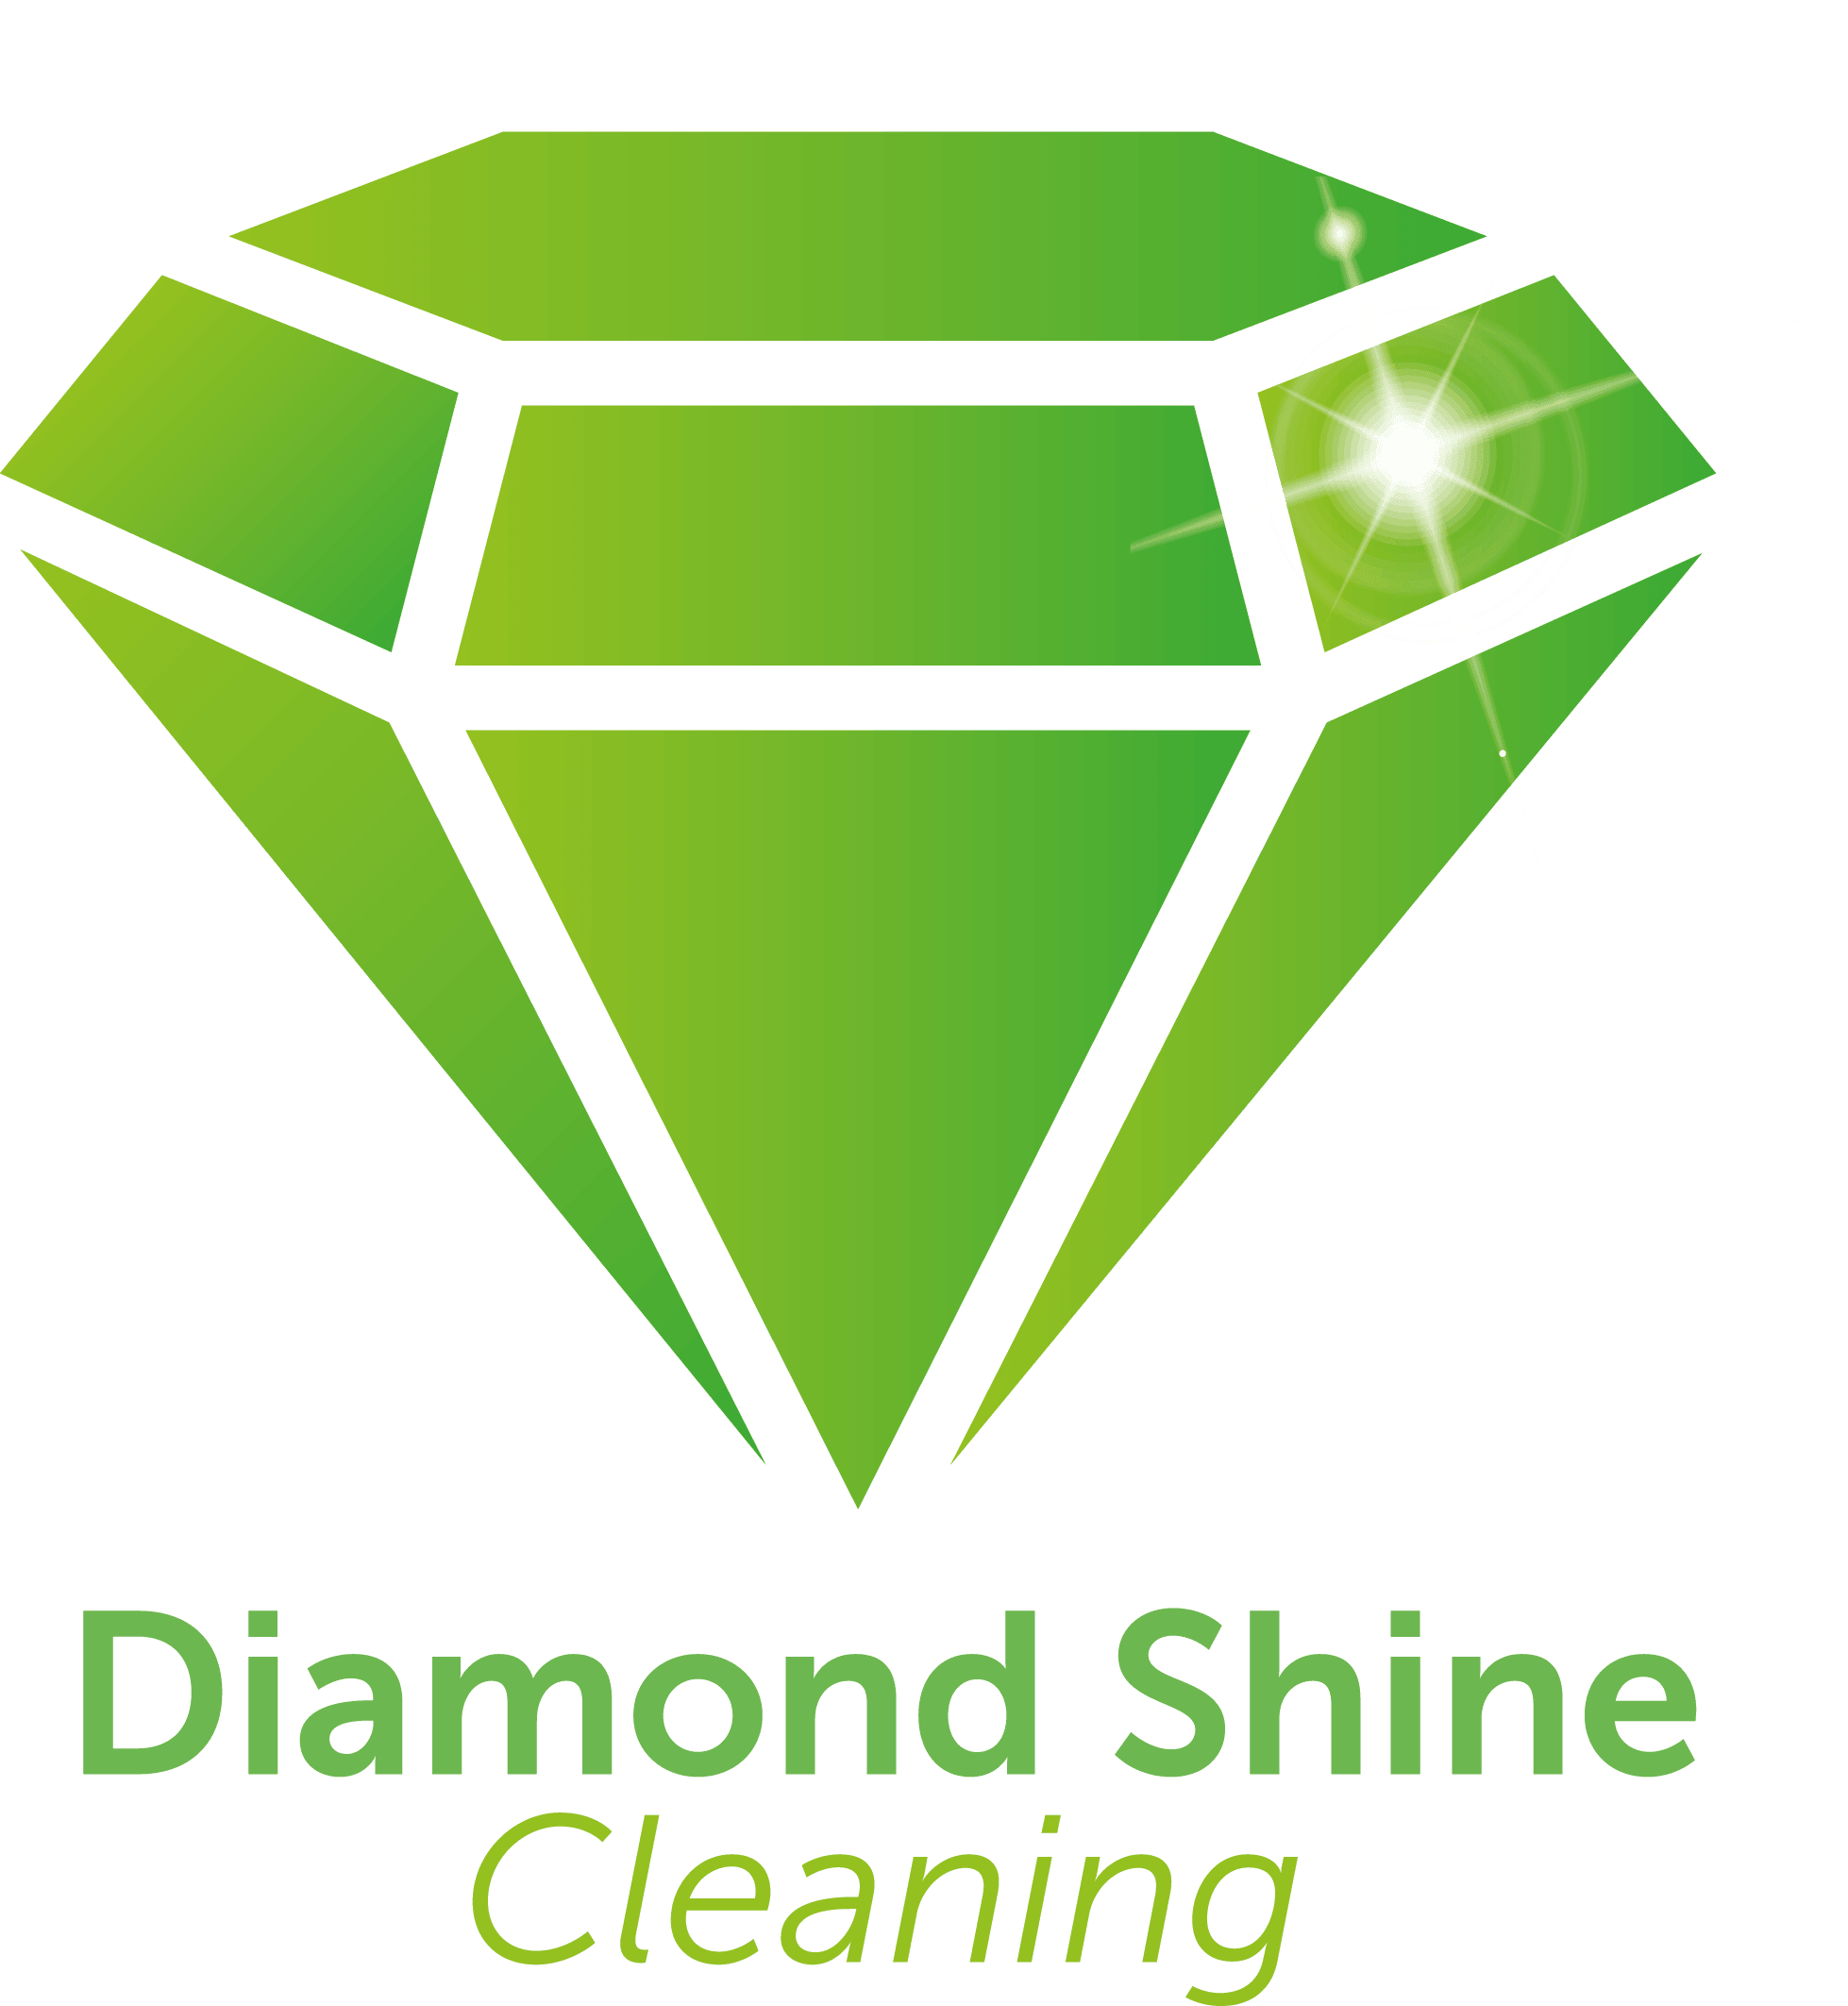 Diamond Shine Cleaning Logo Large